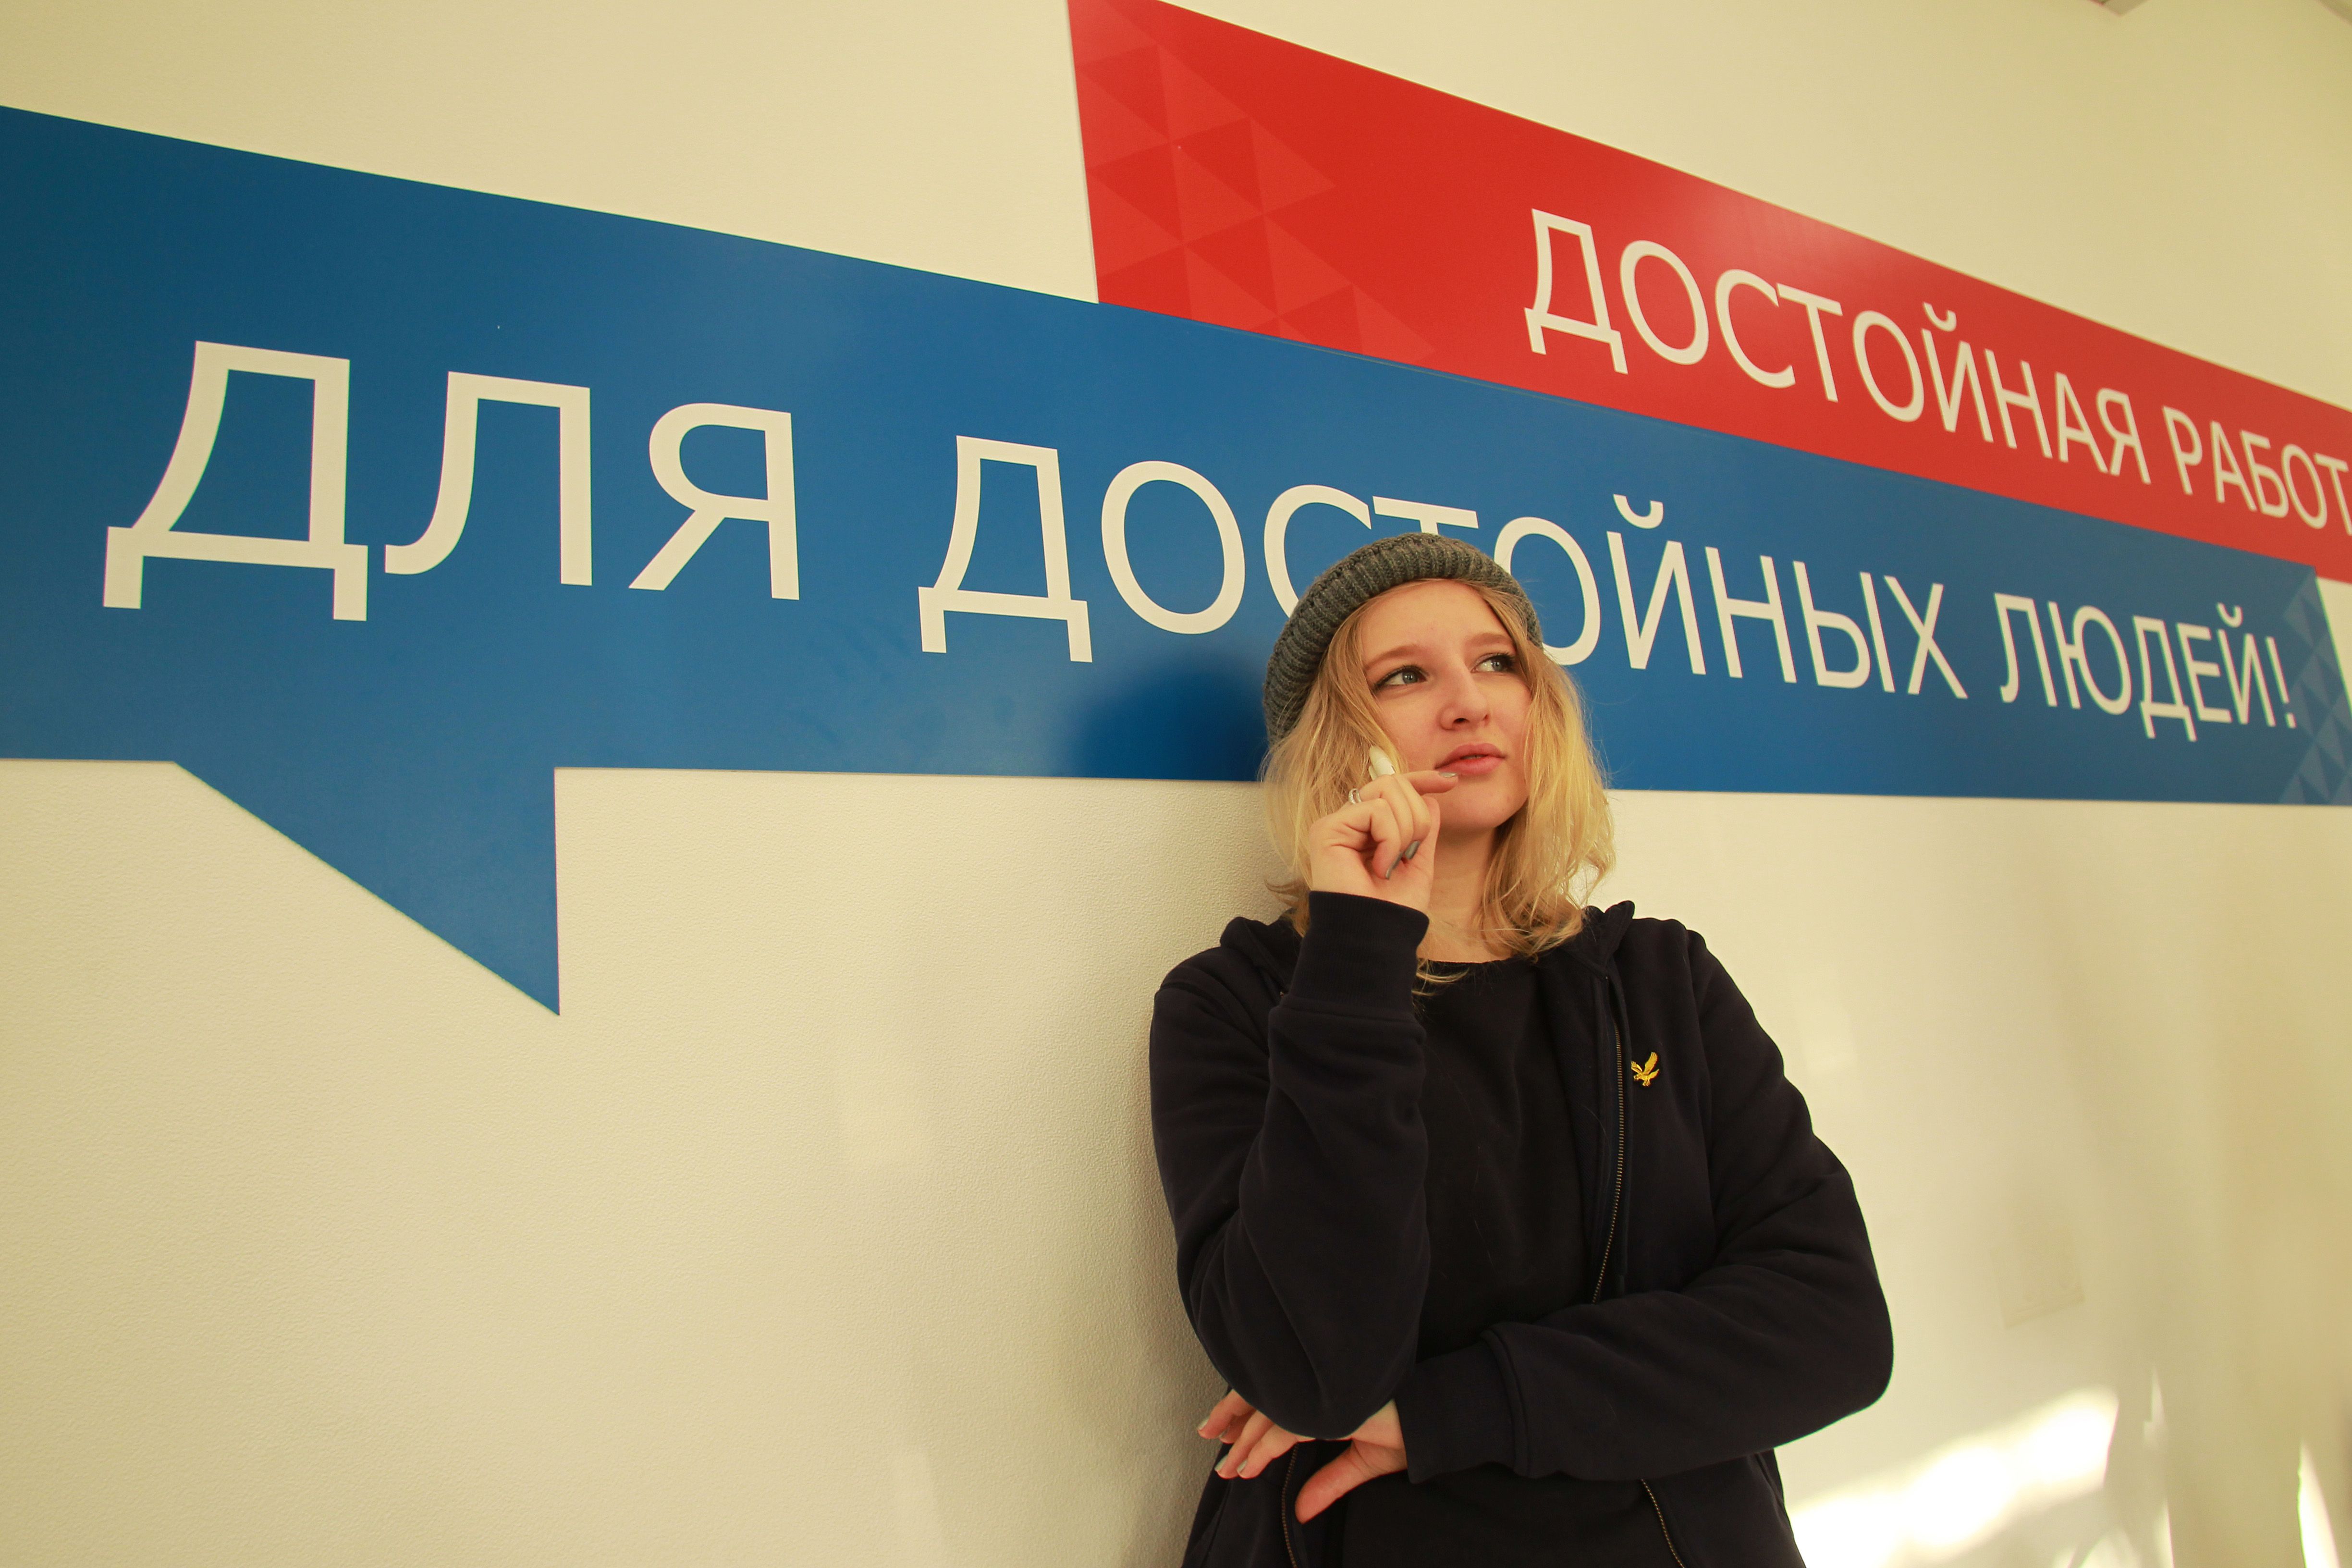 Квалификационный экзамен даст студентам шанс на быстрое трудоустройство в Москве